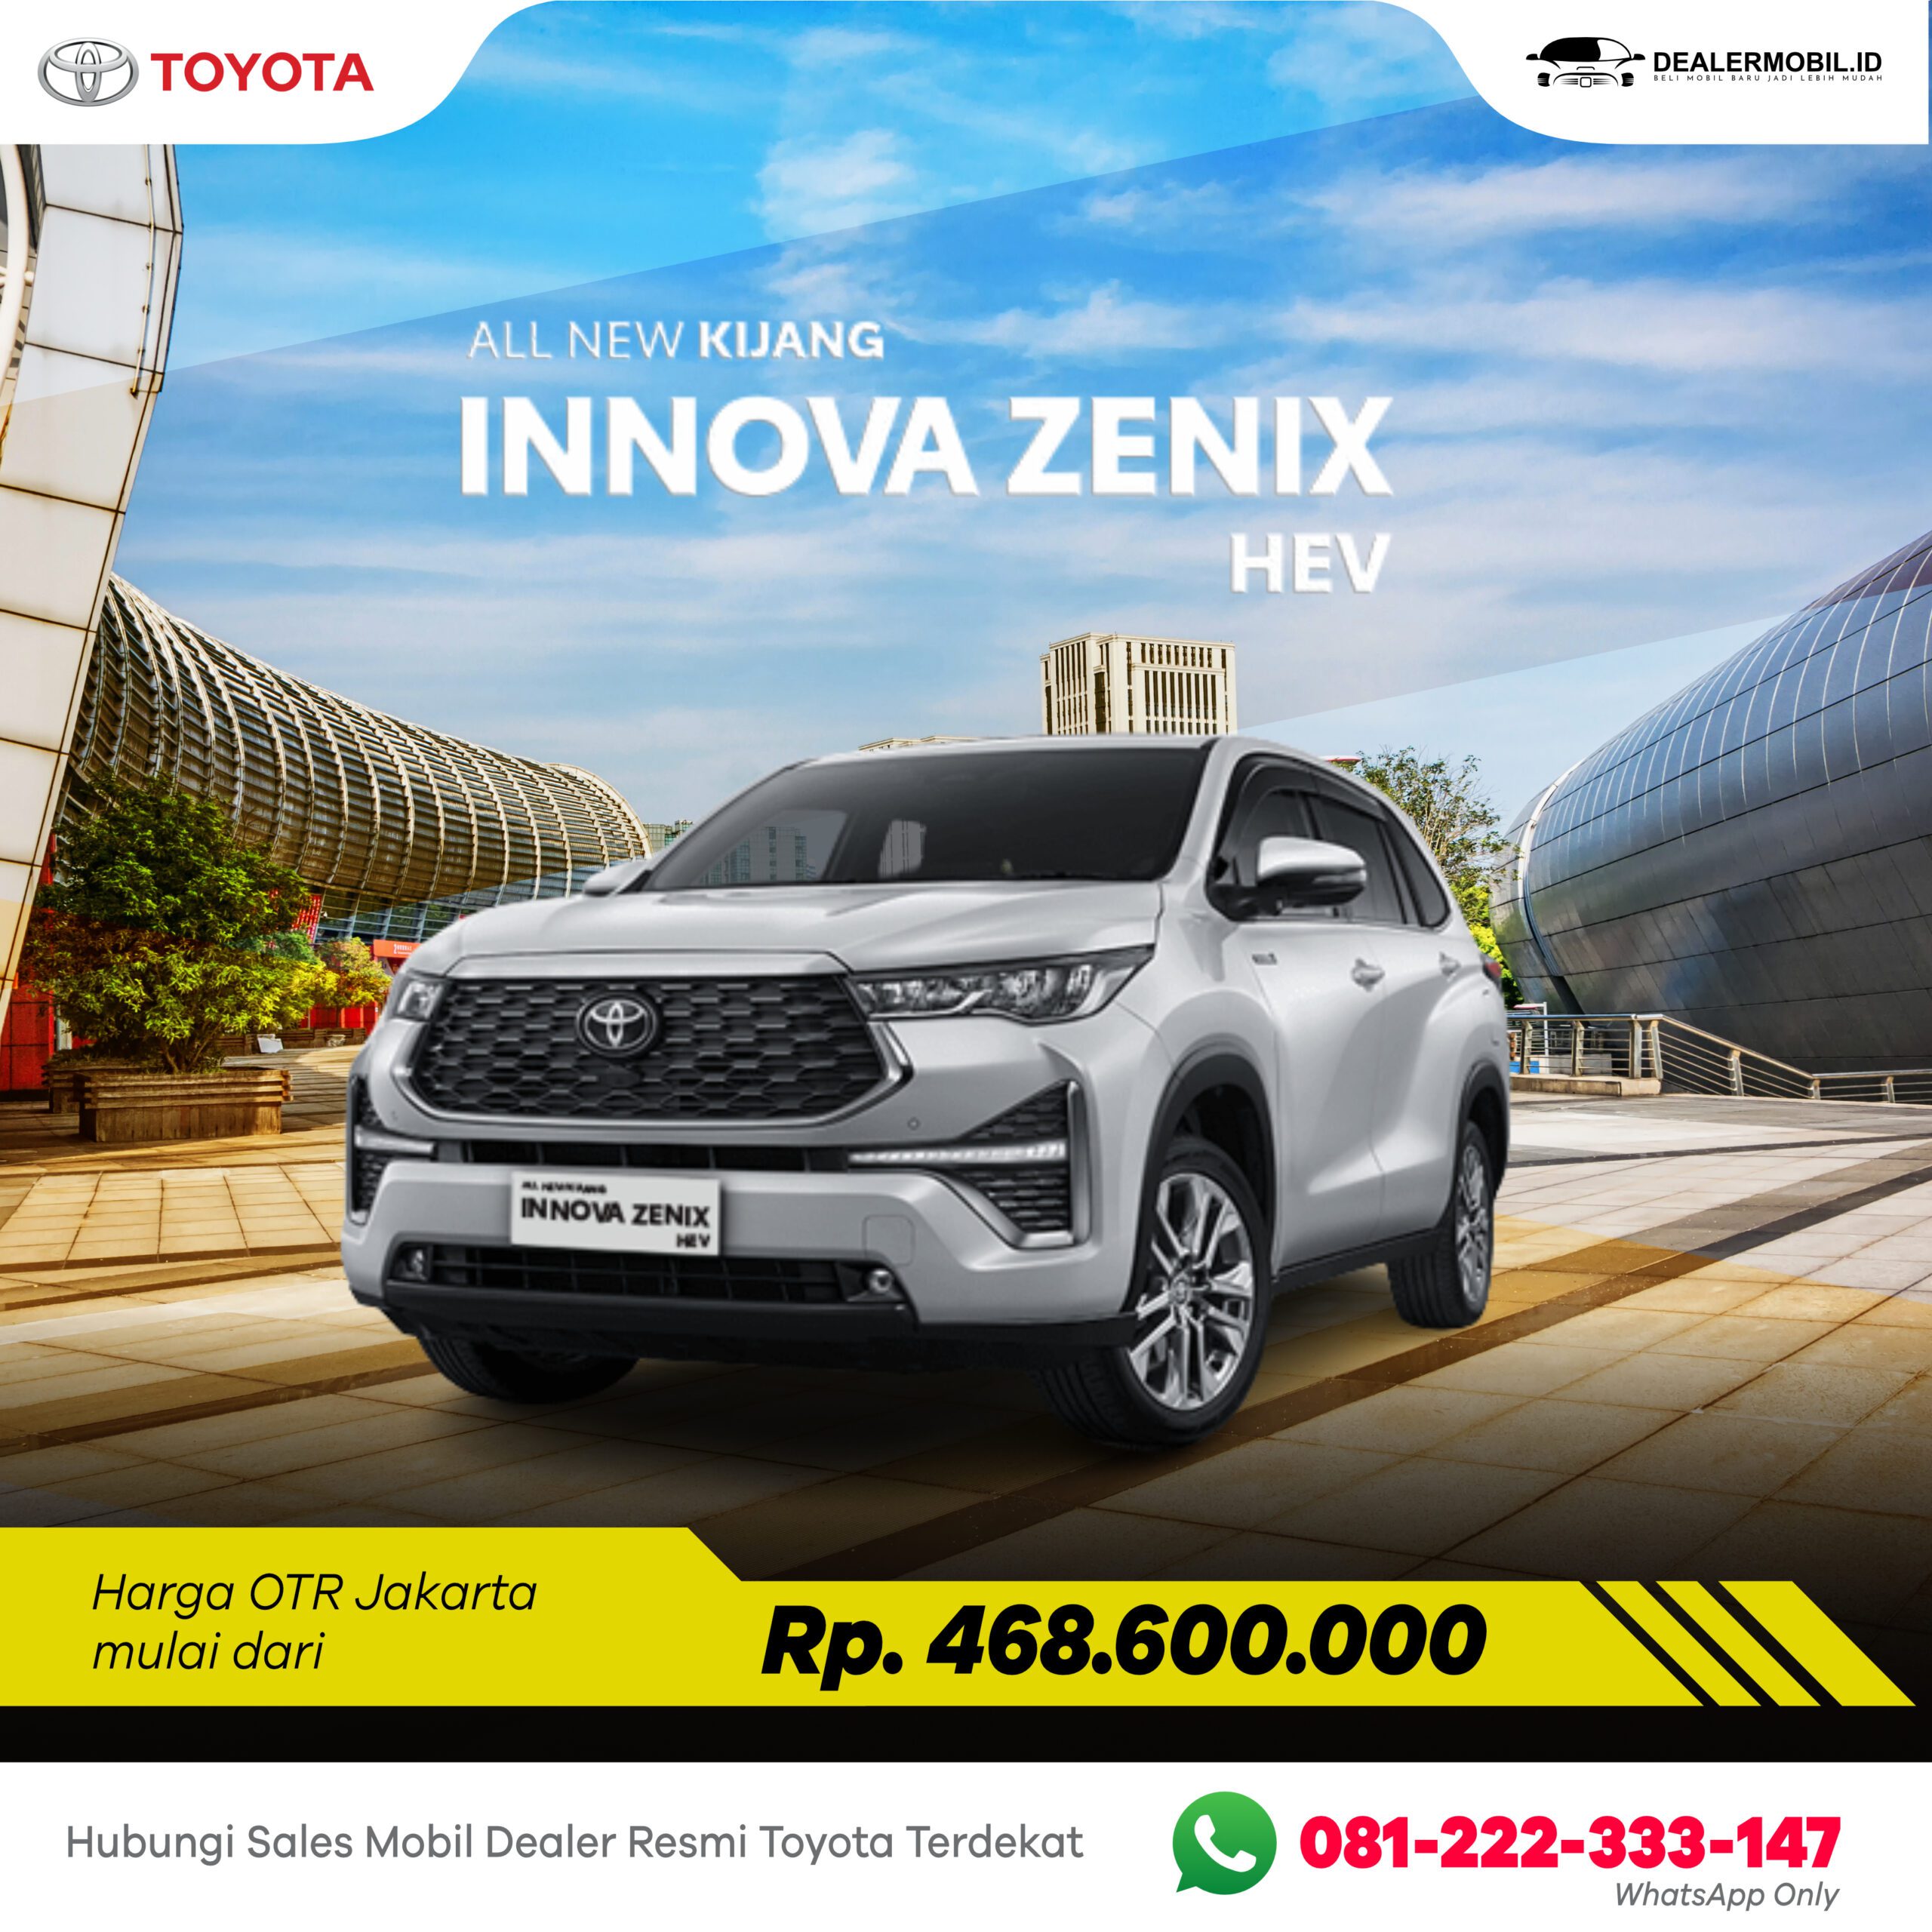 Toyota Kijang Innova Zenix HEV